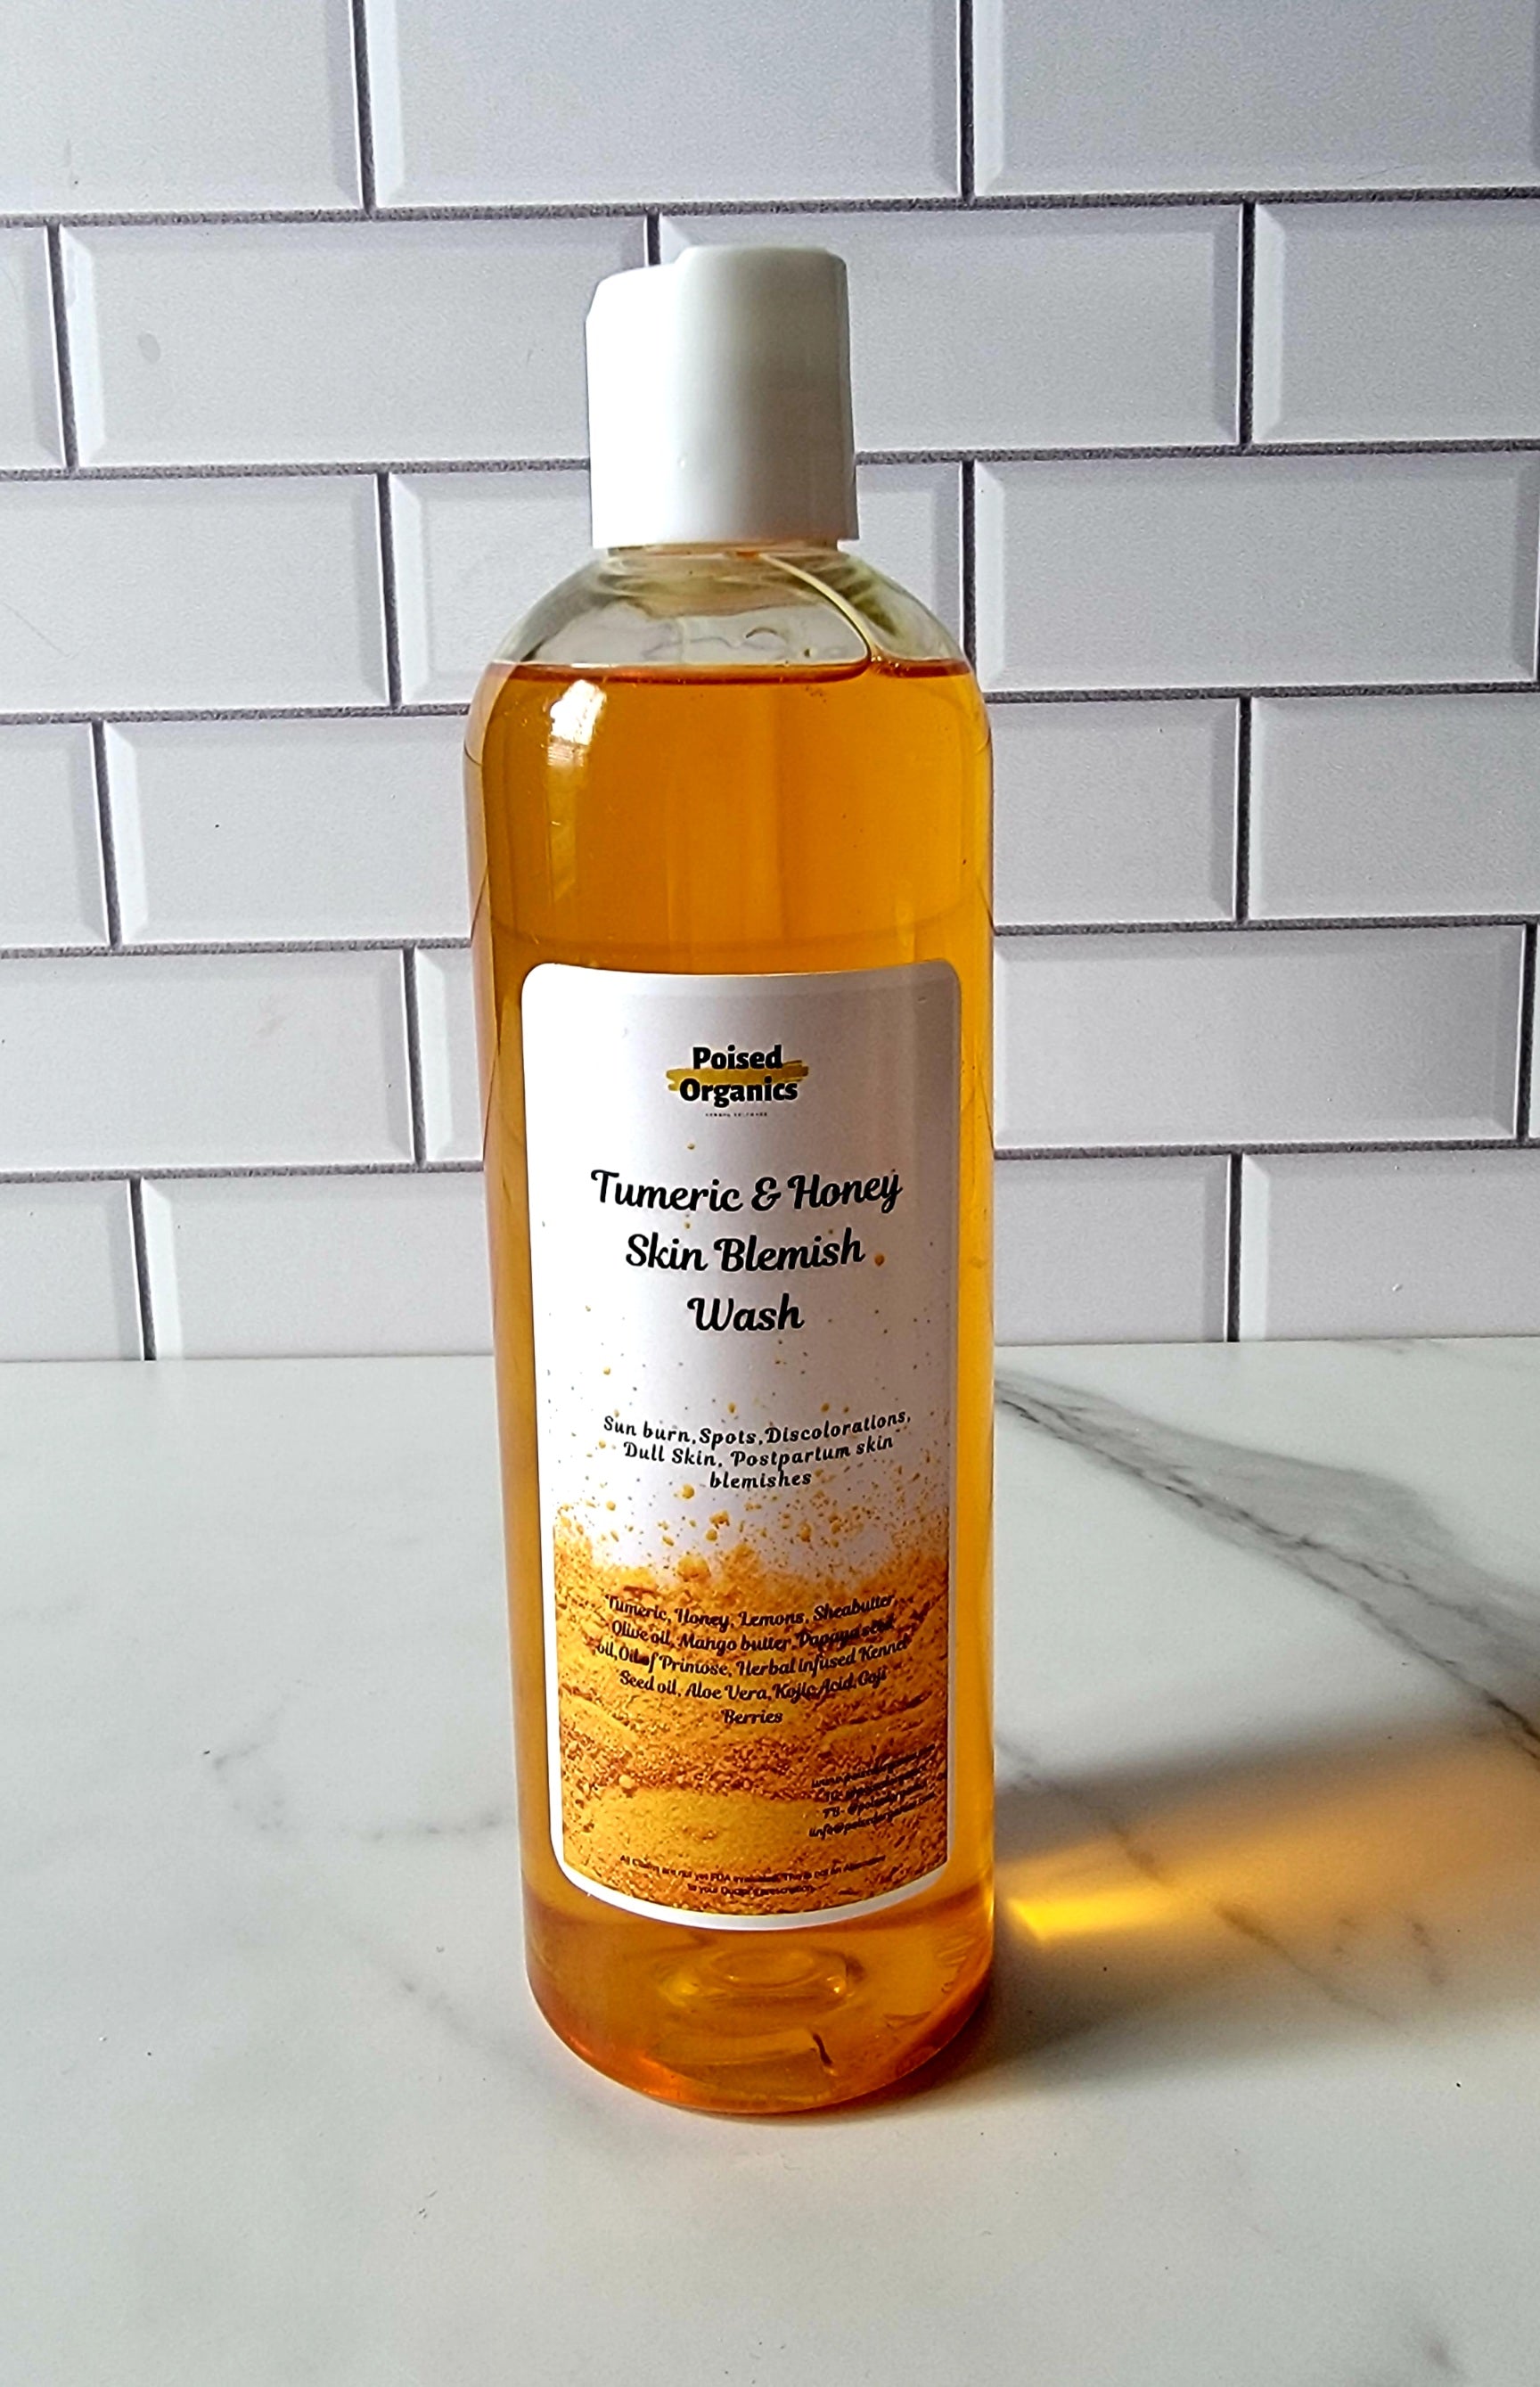 Tumeric & Honey Skin Blemish Wash